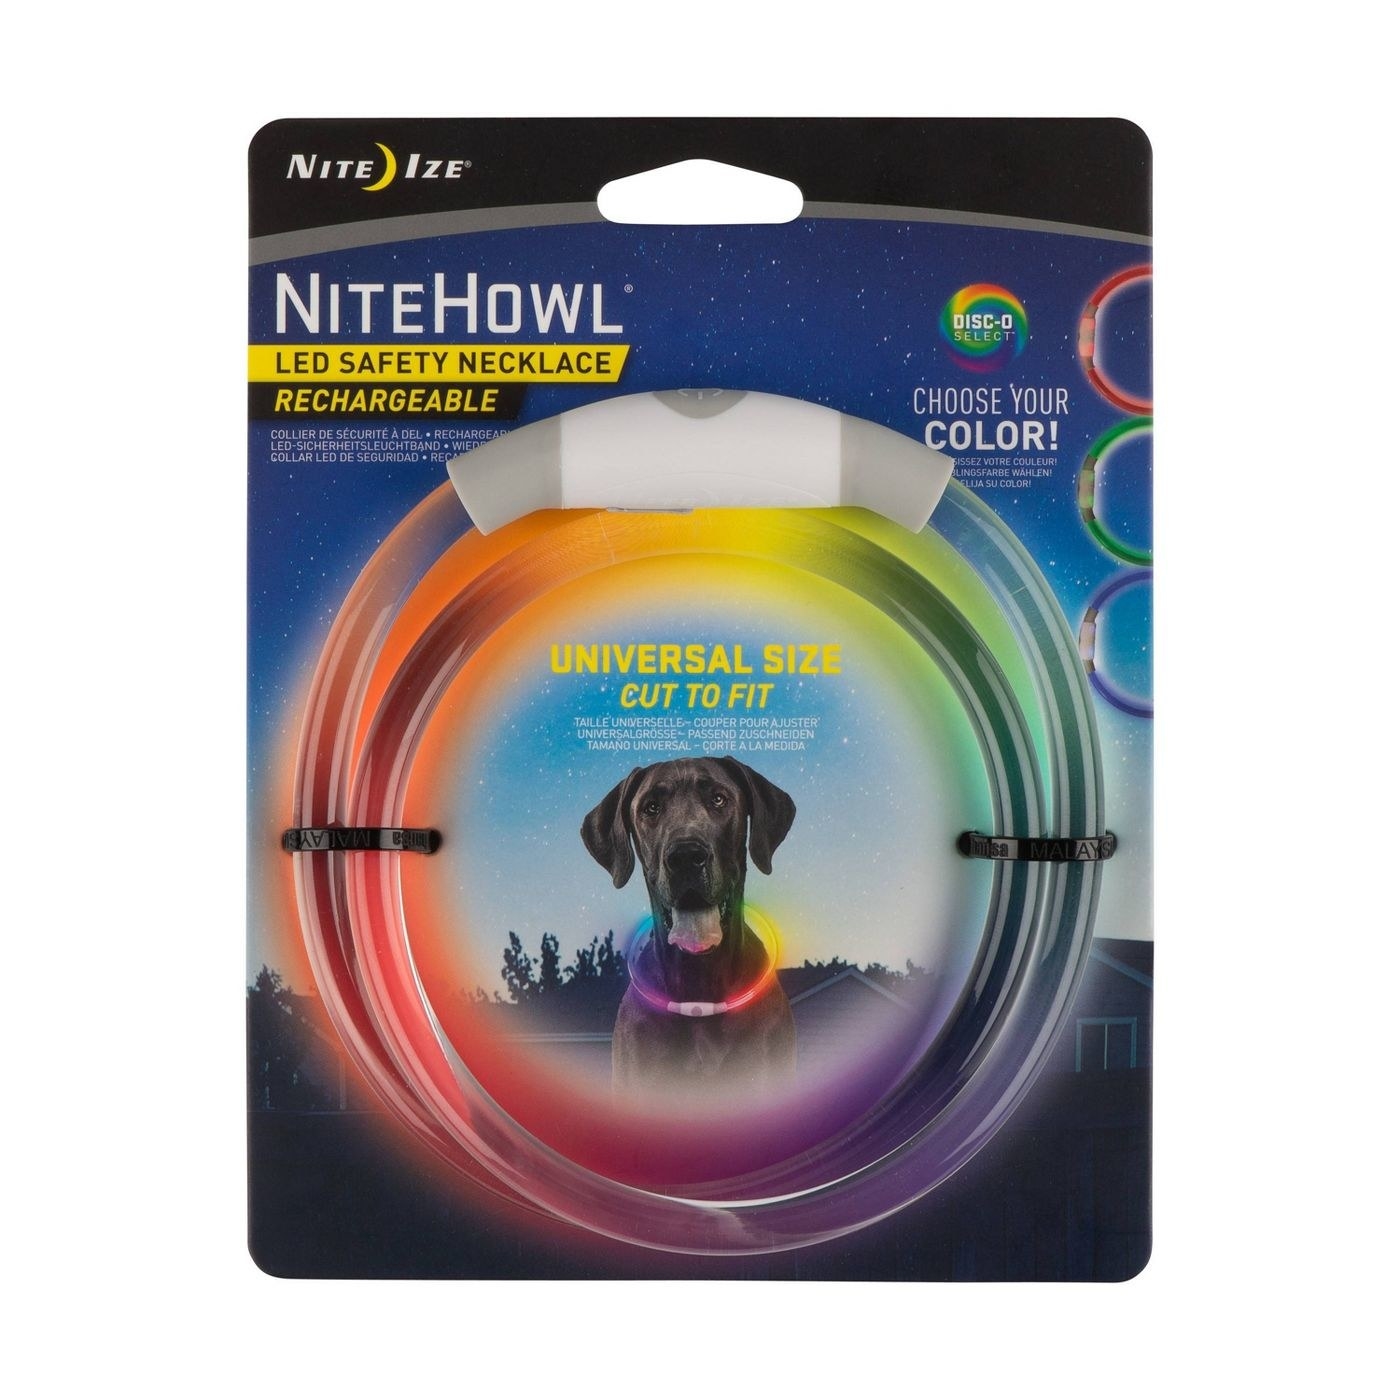 LED safety dog collar